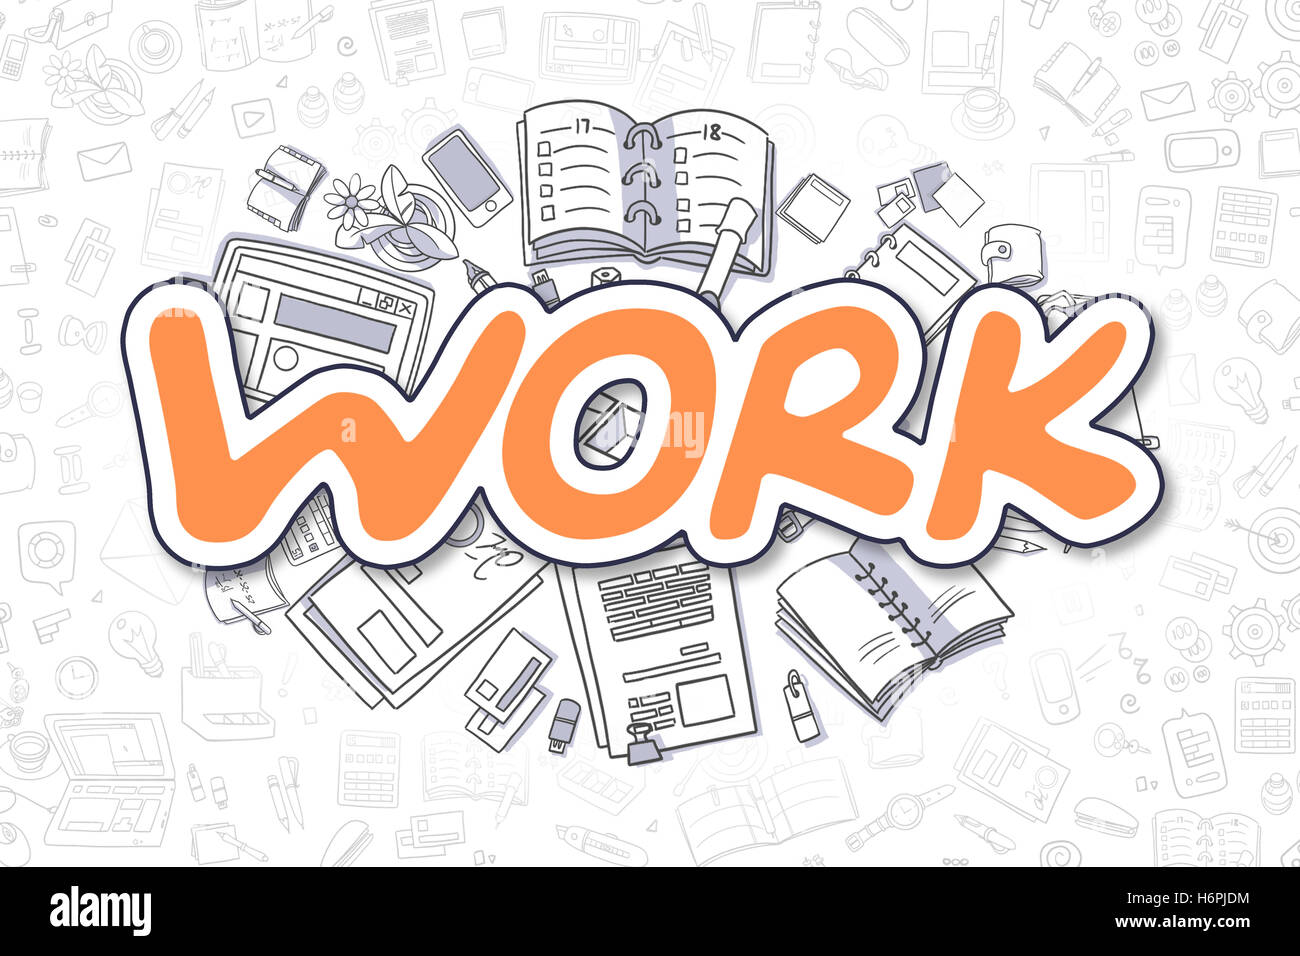 Lavoro - Doodle testo arancione. Il concetto di business. Foto Stock